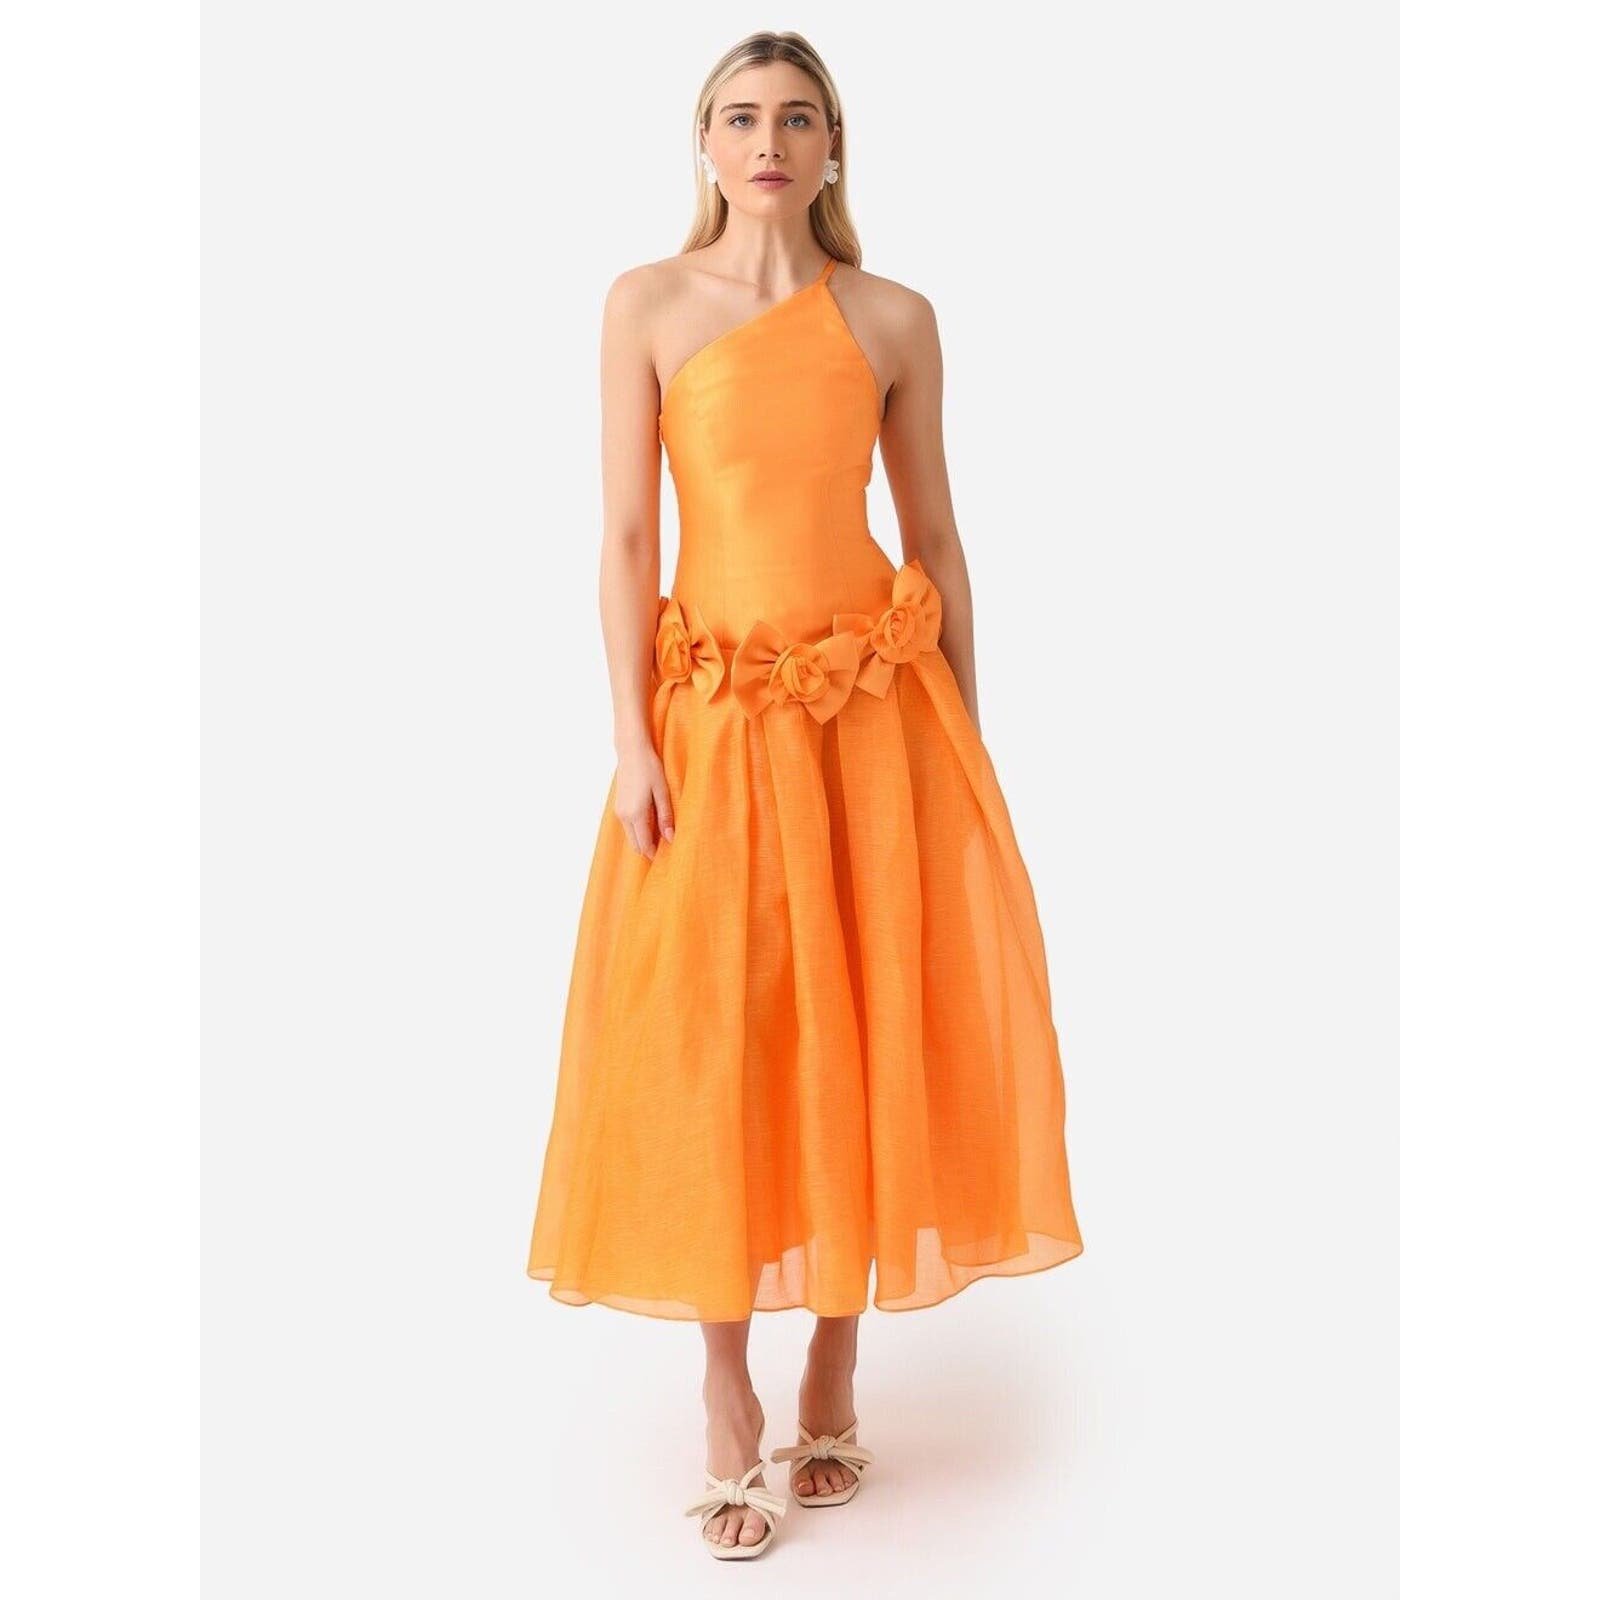 Custom Alemais Macie One Shoulder Rosette Full Skirt Dress in Saffron/orange Size 6/ S nnlsqoYkG outlet online shop